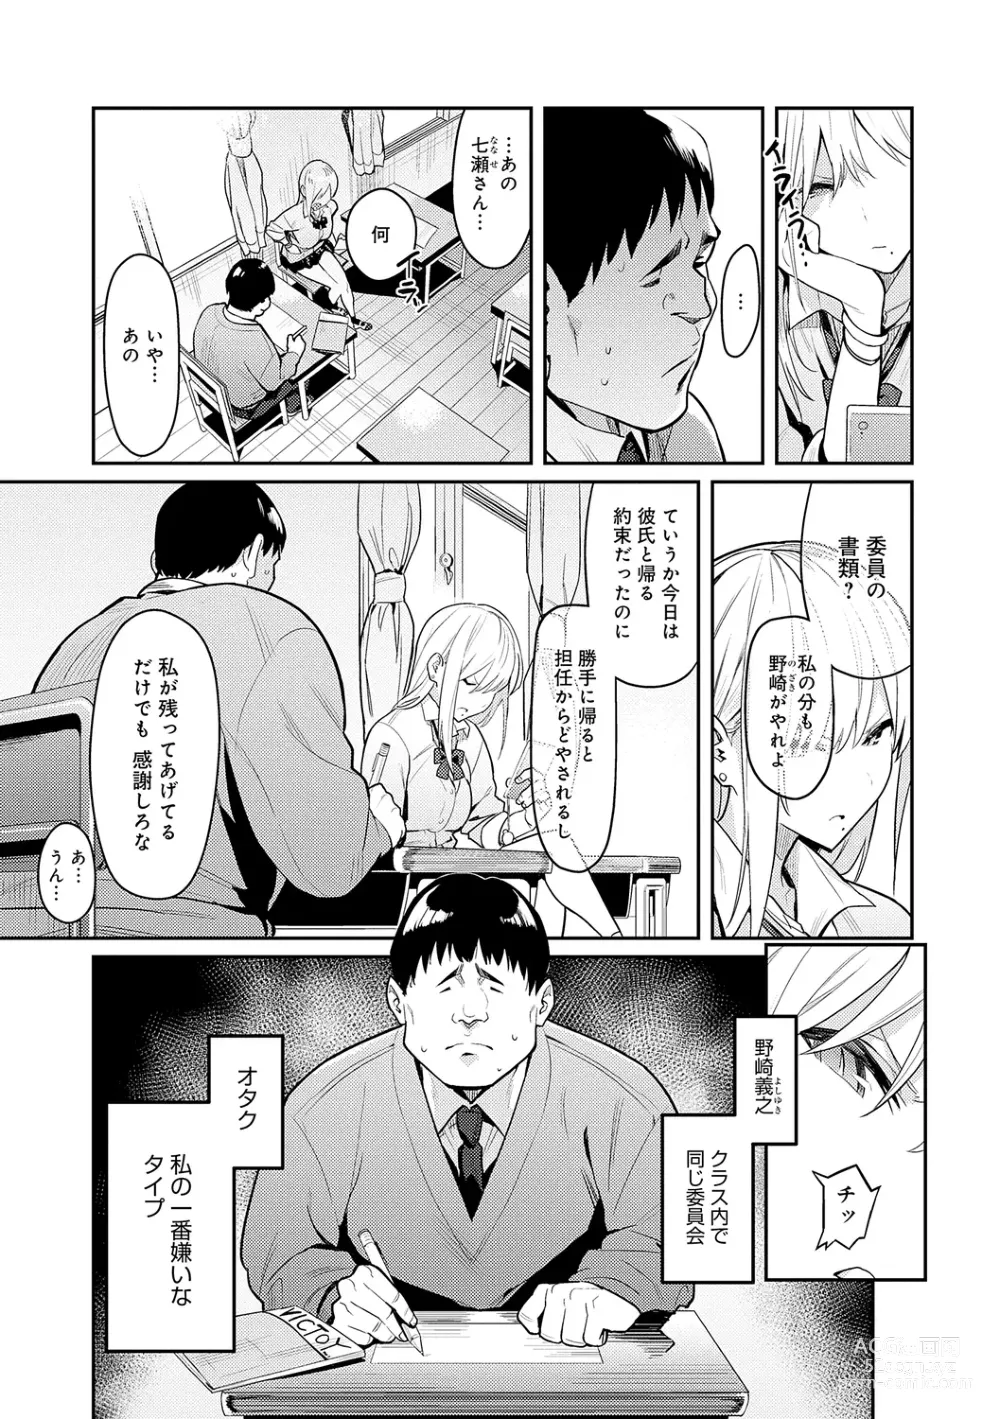 Page 7 of manga Seiyoku Tsuyo Tsuyo + Extra (decensored)